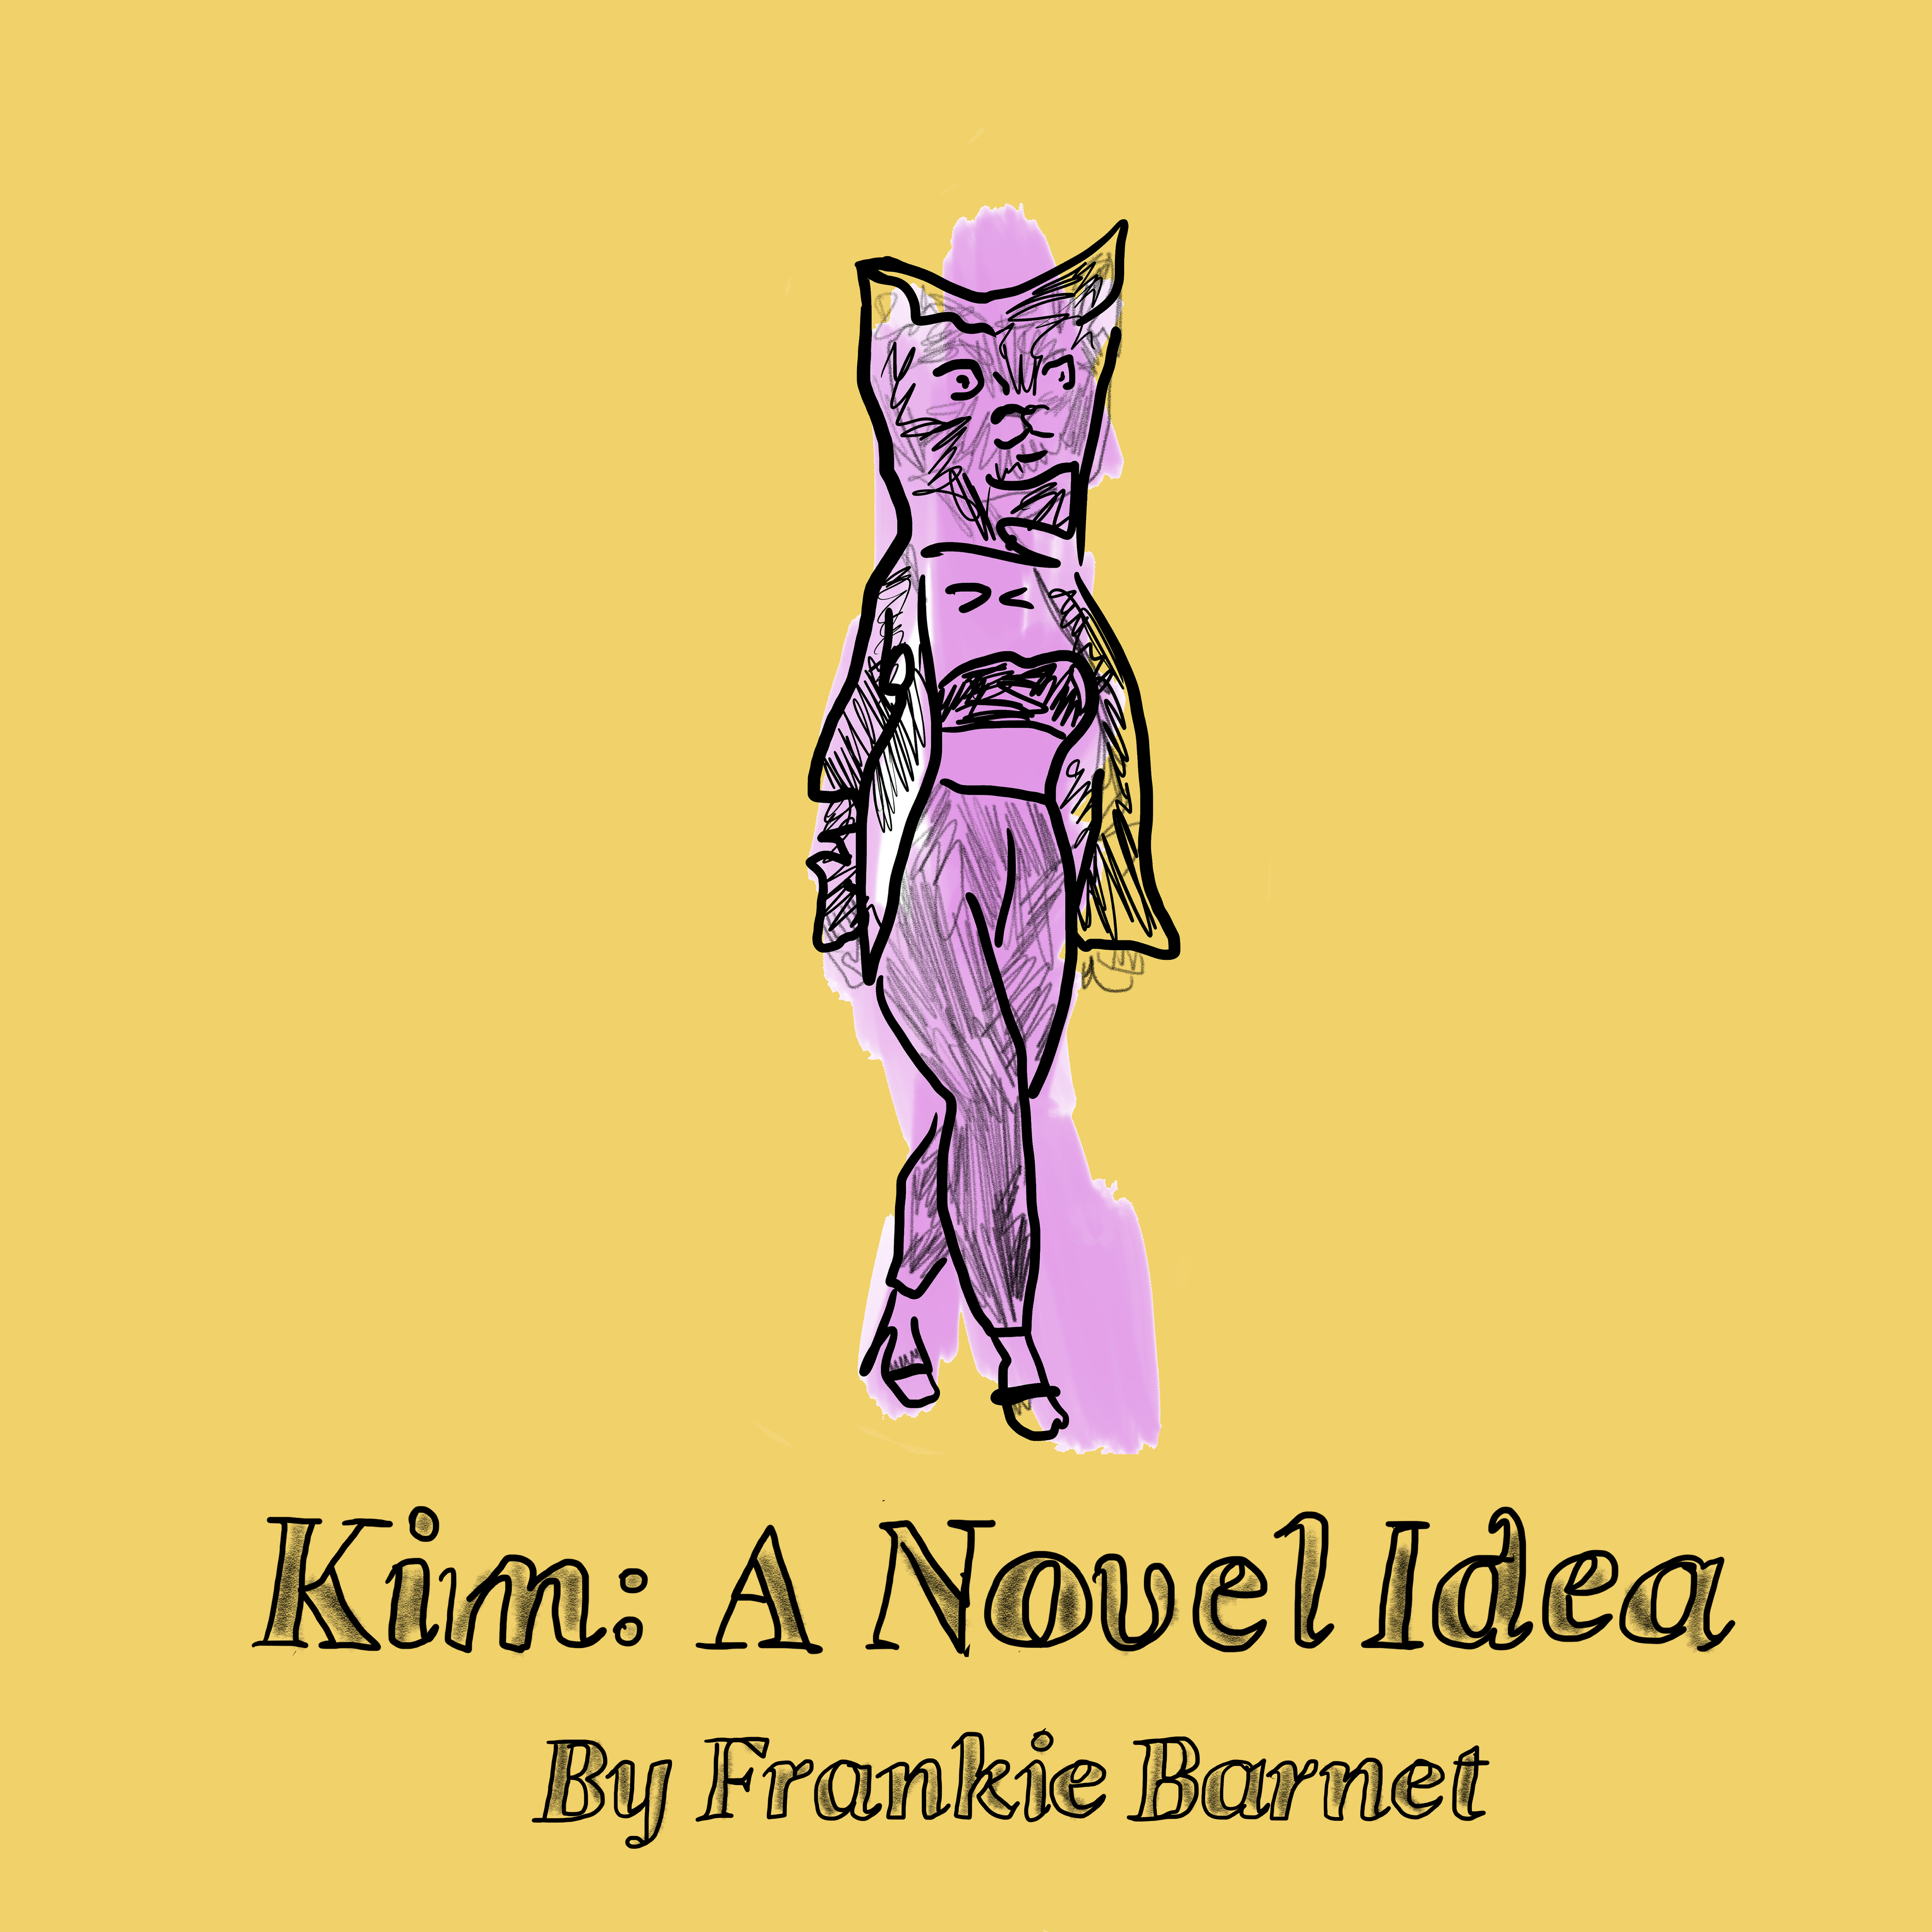 Kim: A Novel Idea